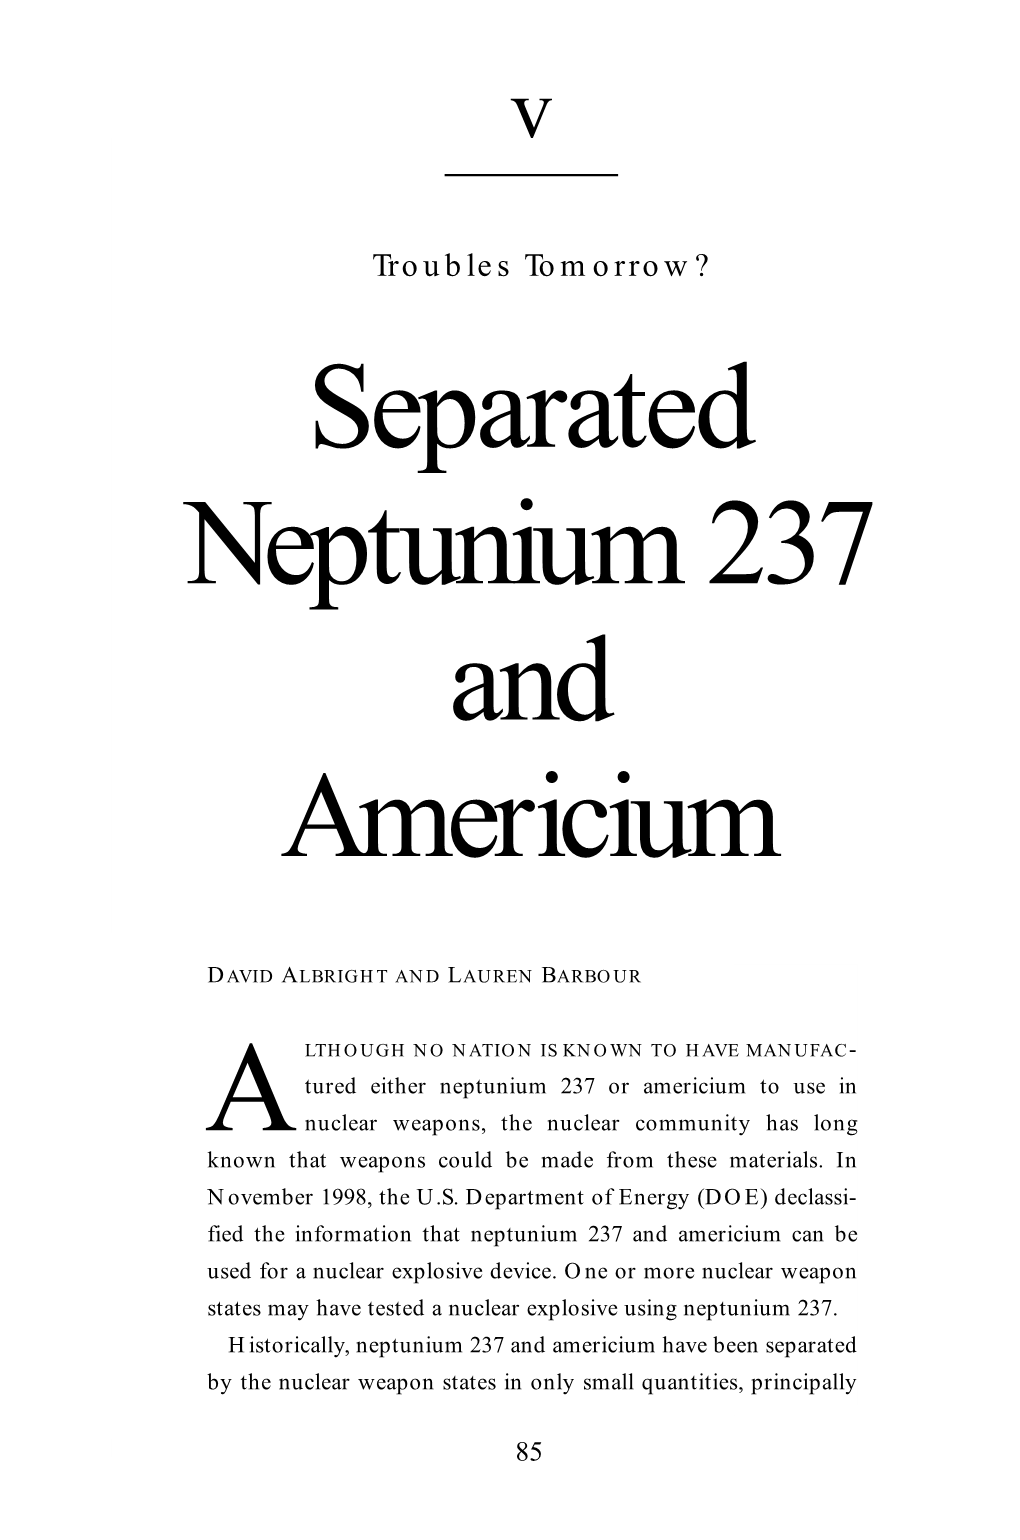 Separated Neptunium 237 and Americium